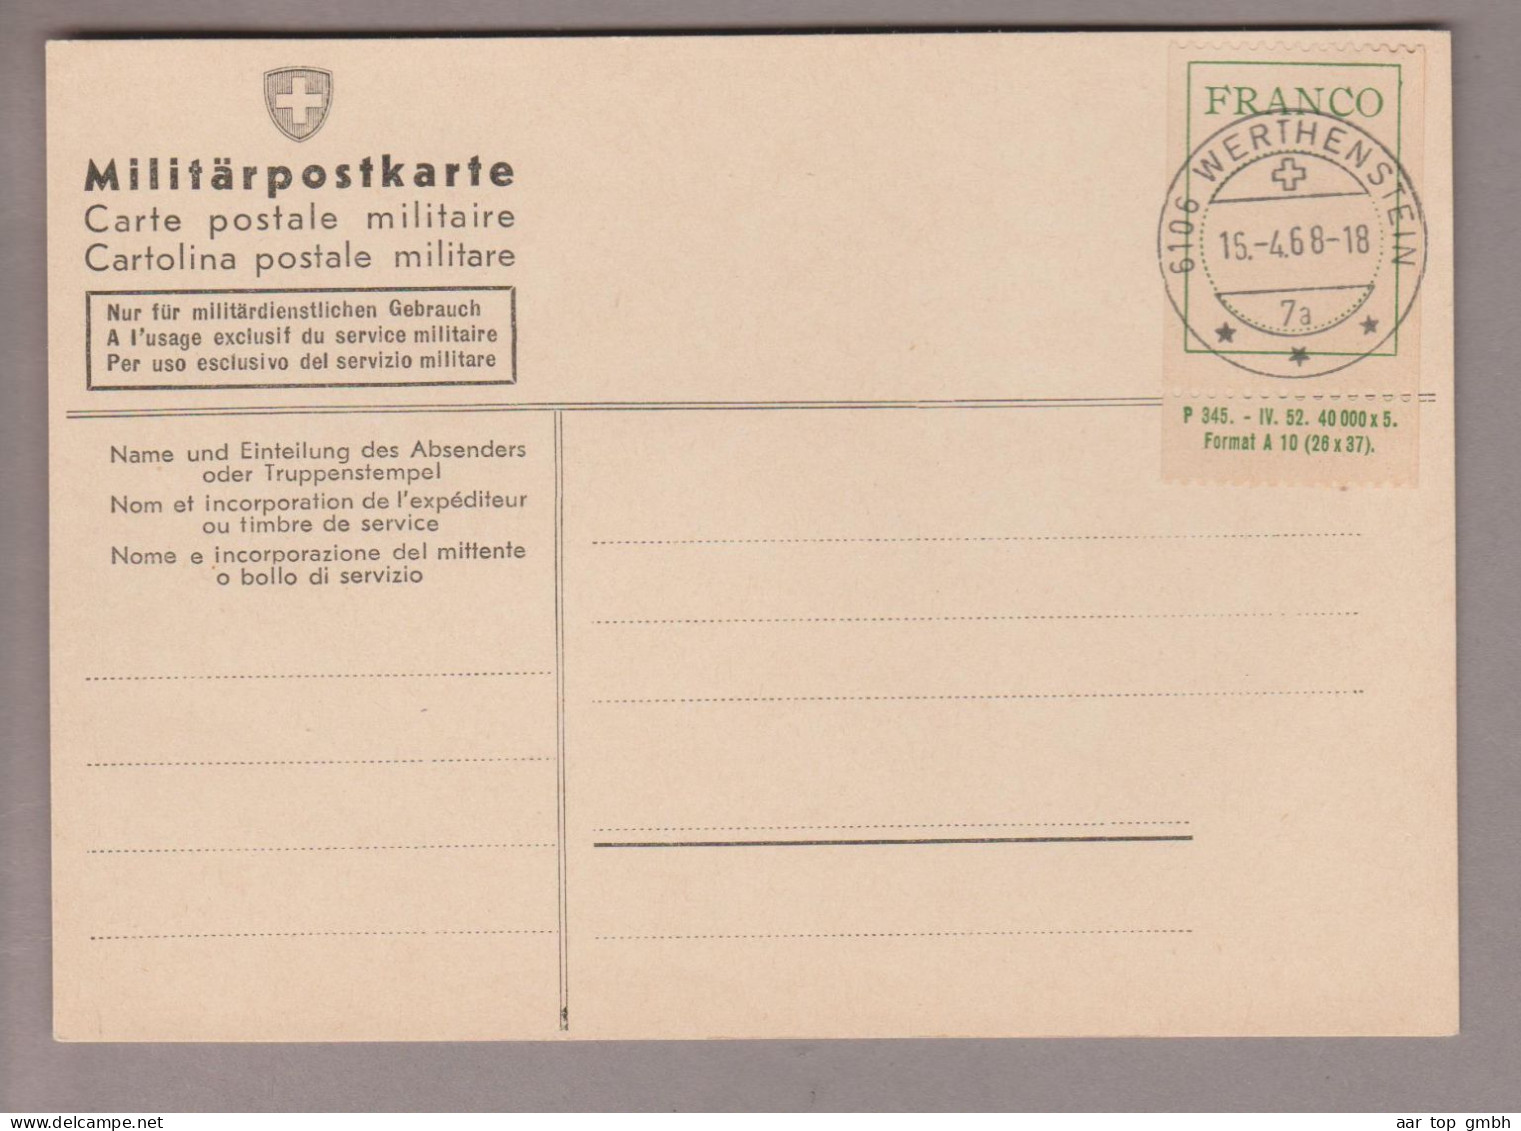 Schweiz Portofreiheit Frankozettel SBK #4 Mit Anhänger Auf Beleg Mit Stempel Werthenstein 1968-04-15 - Vrijstelling Van Portkosten